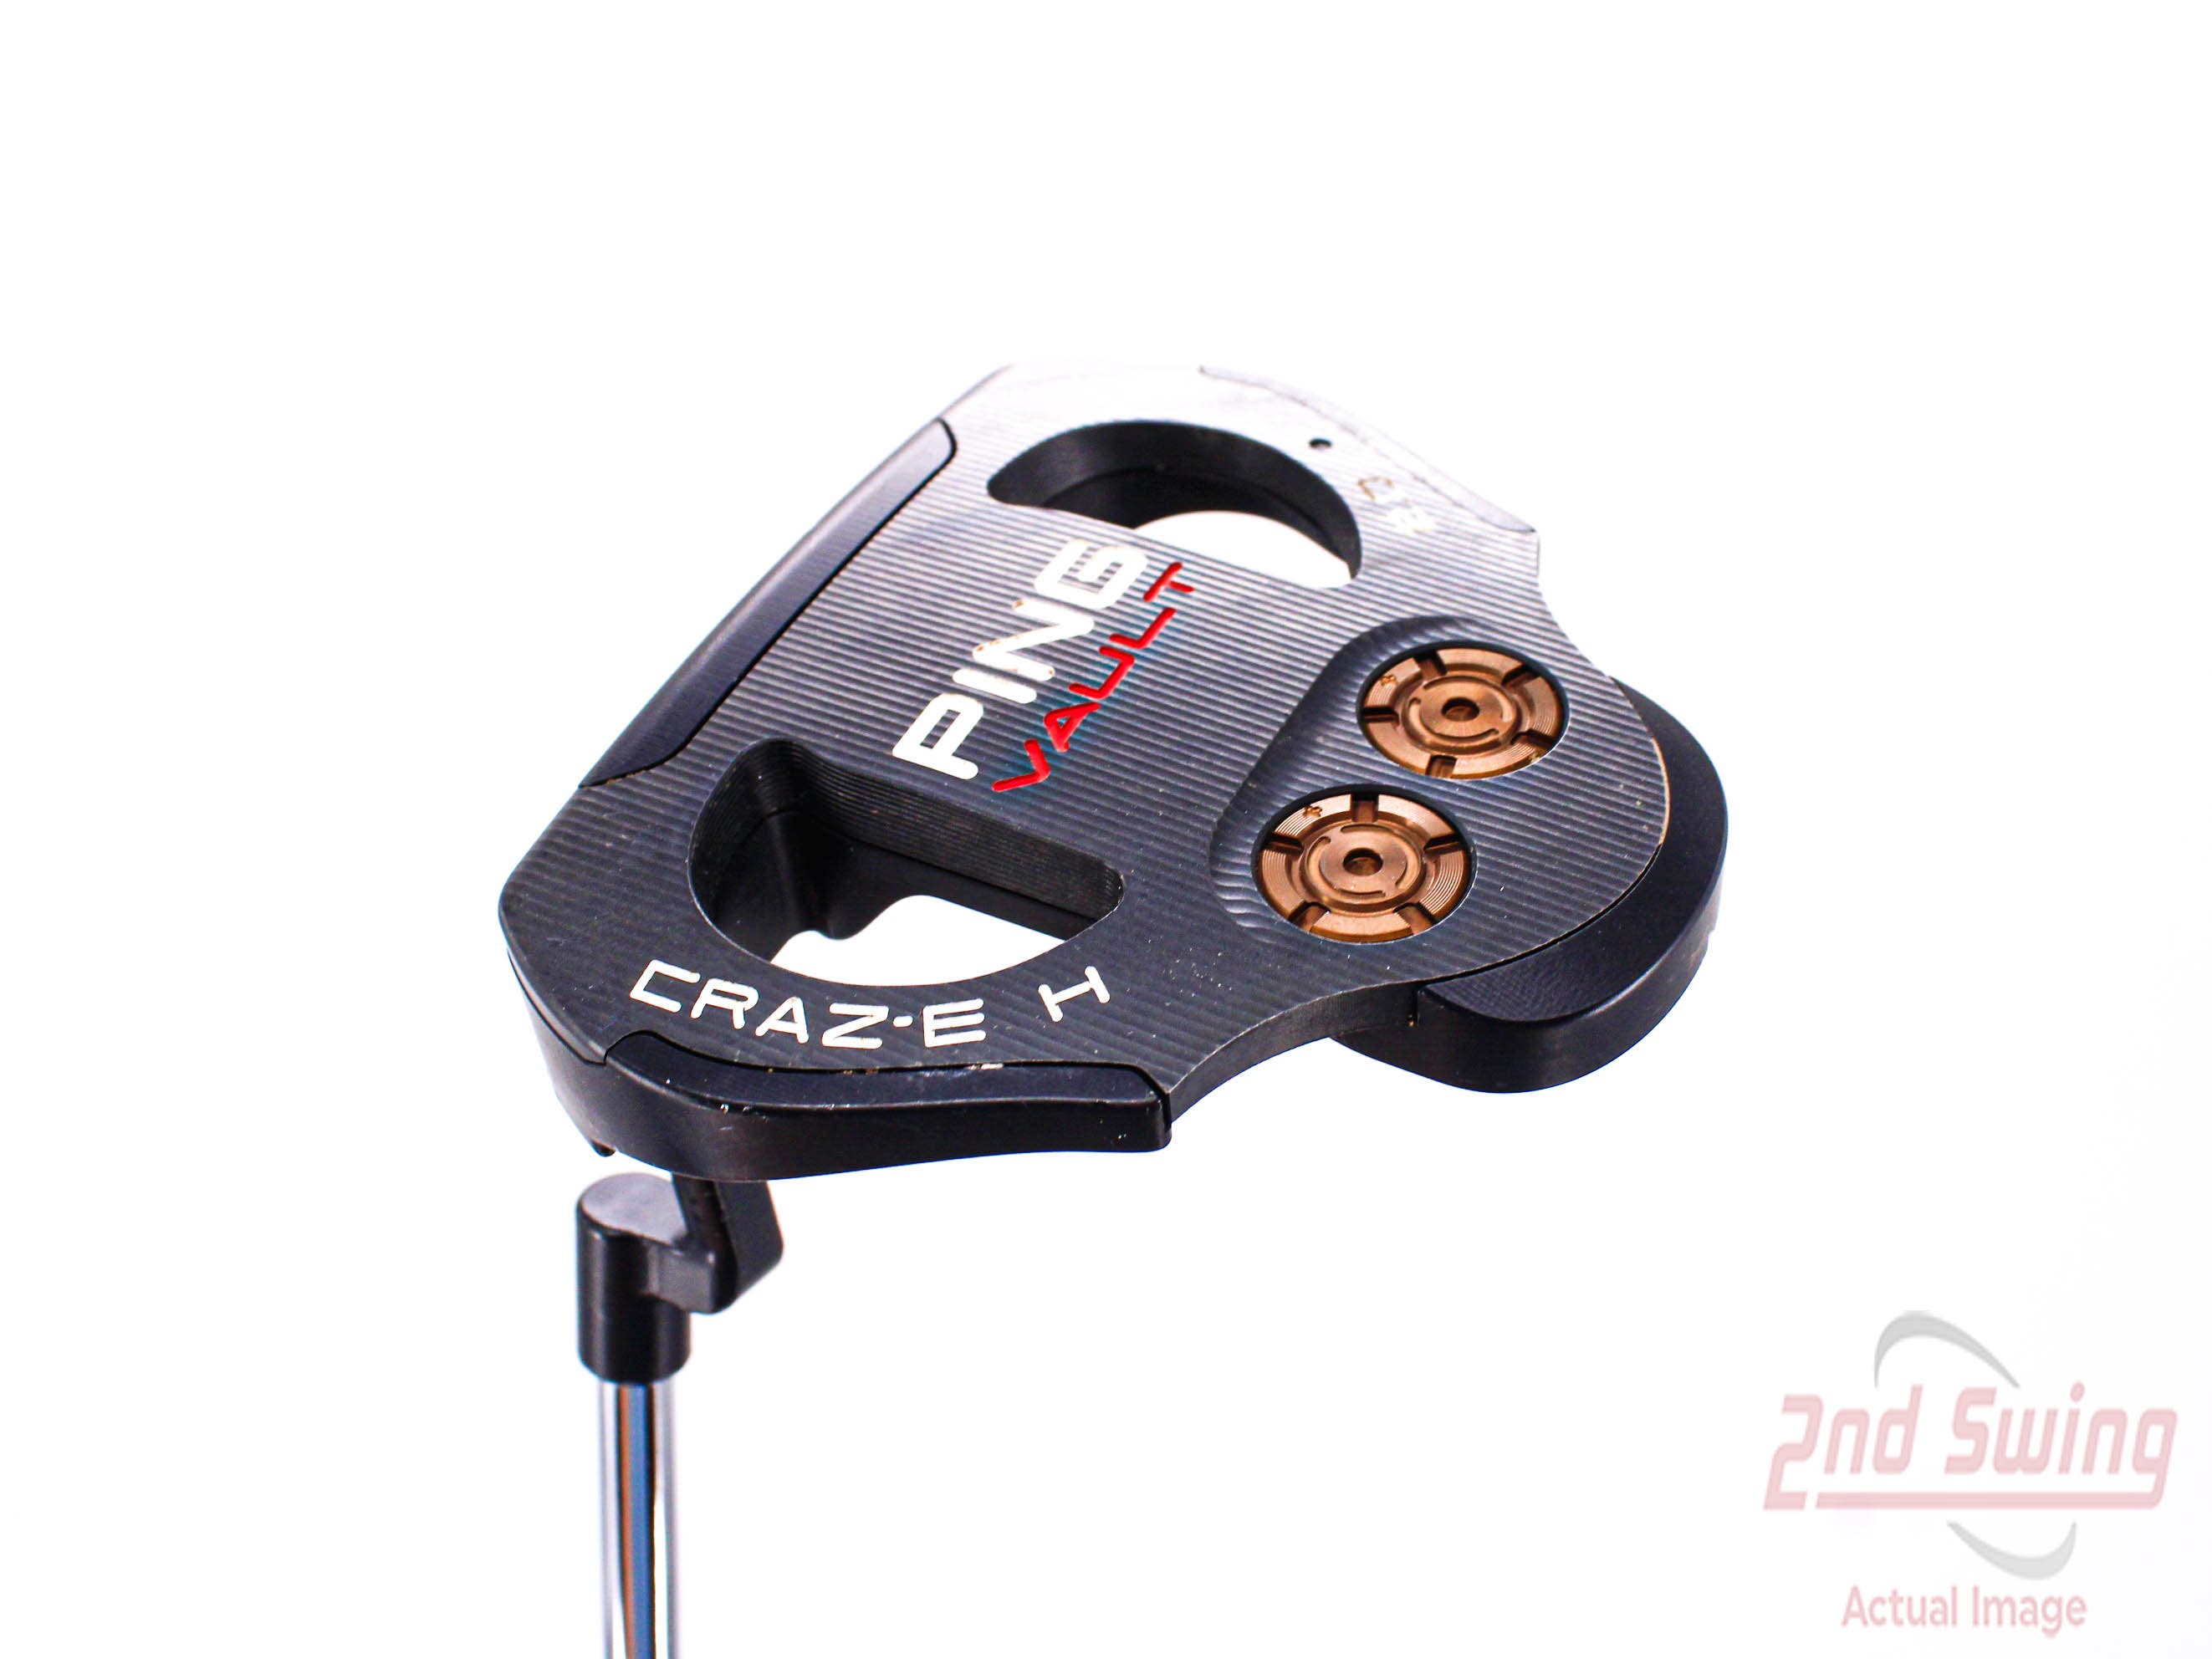 Ping Vault 2.0 Craz-E H Putter | 2nd Swing Golf